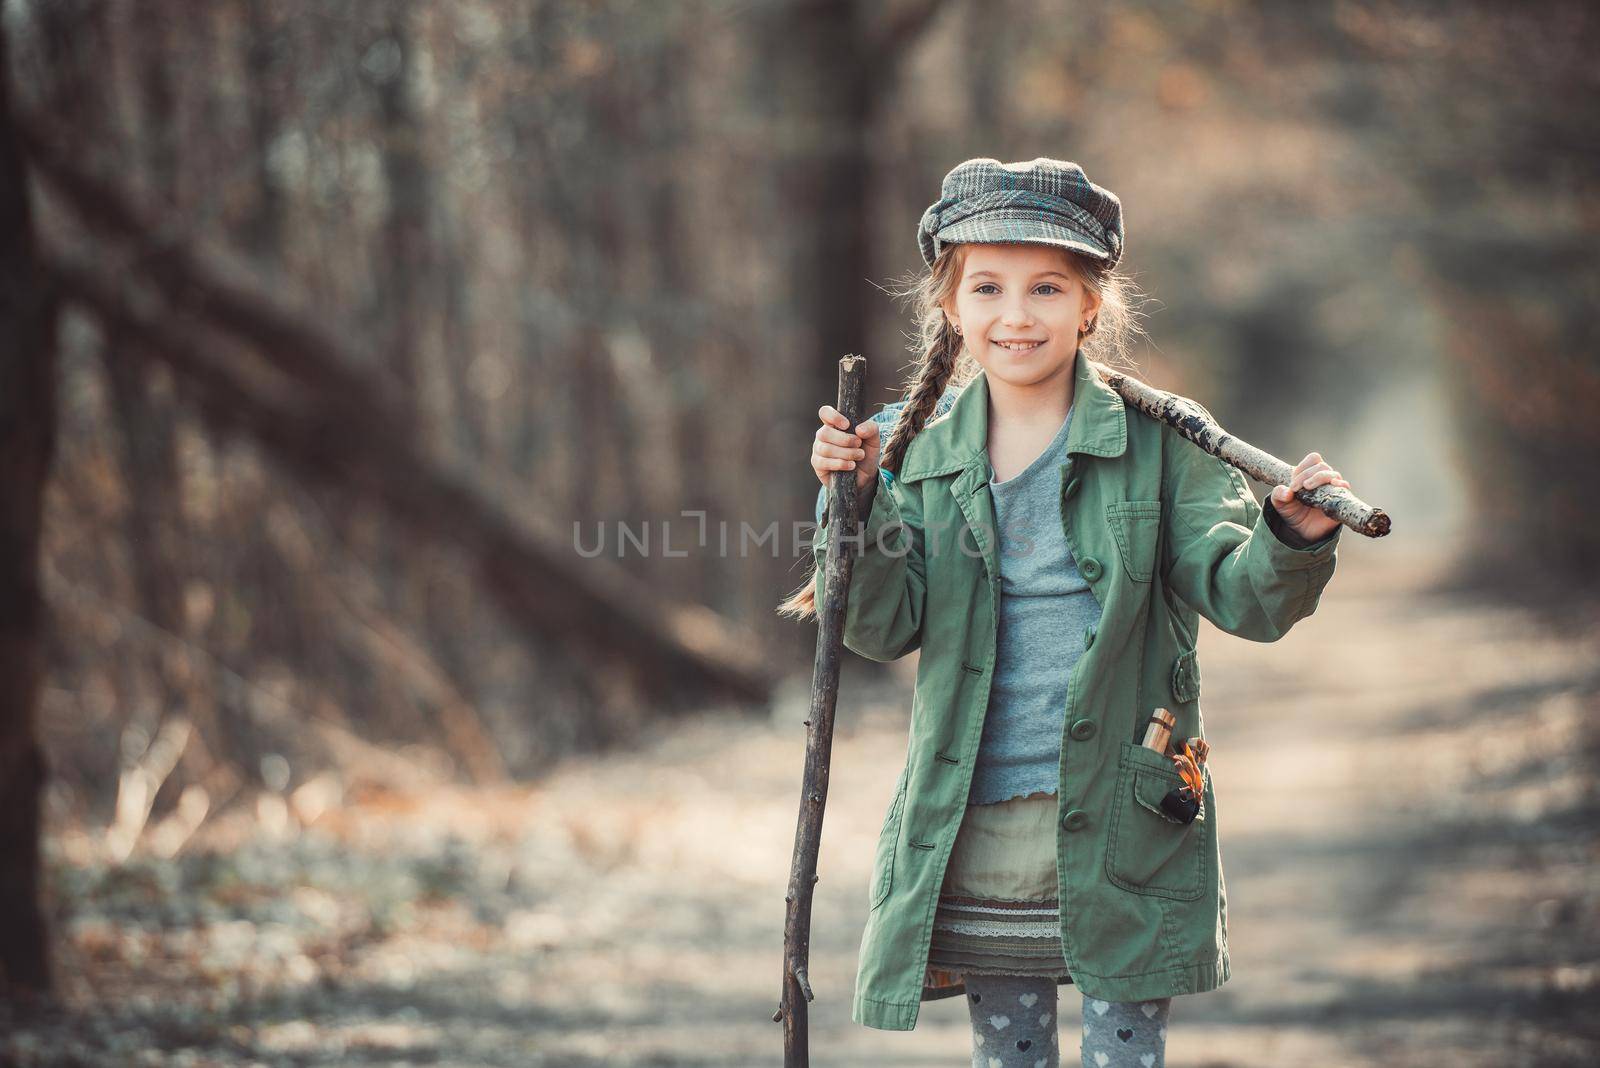 girl goes through the woods by GekaSkr